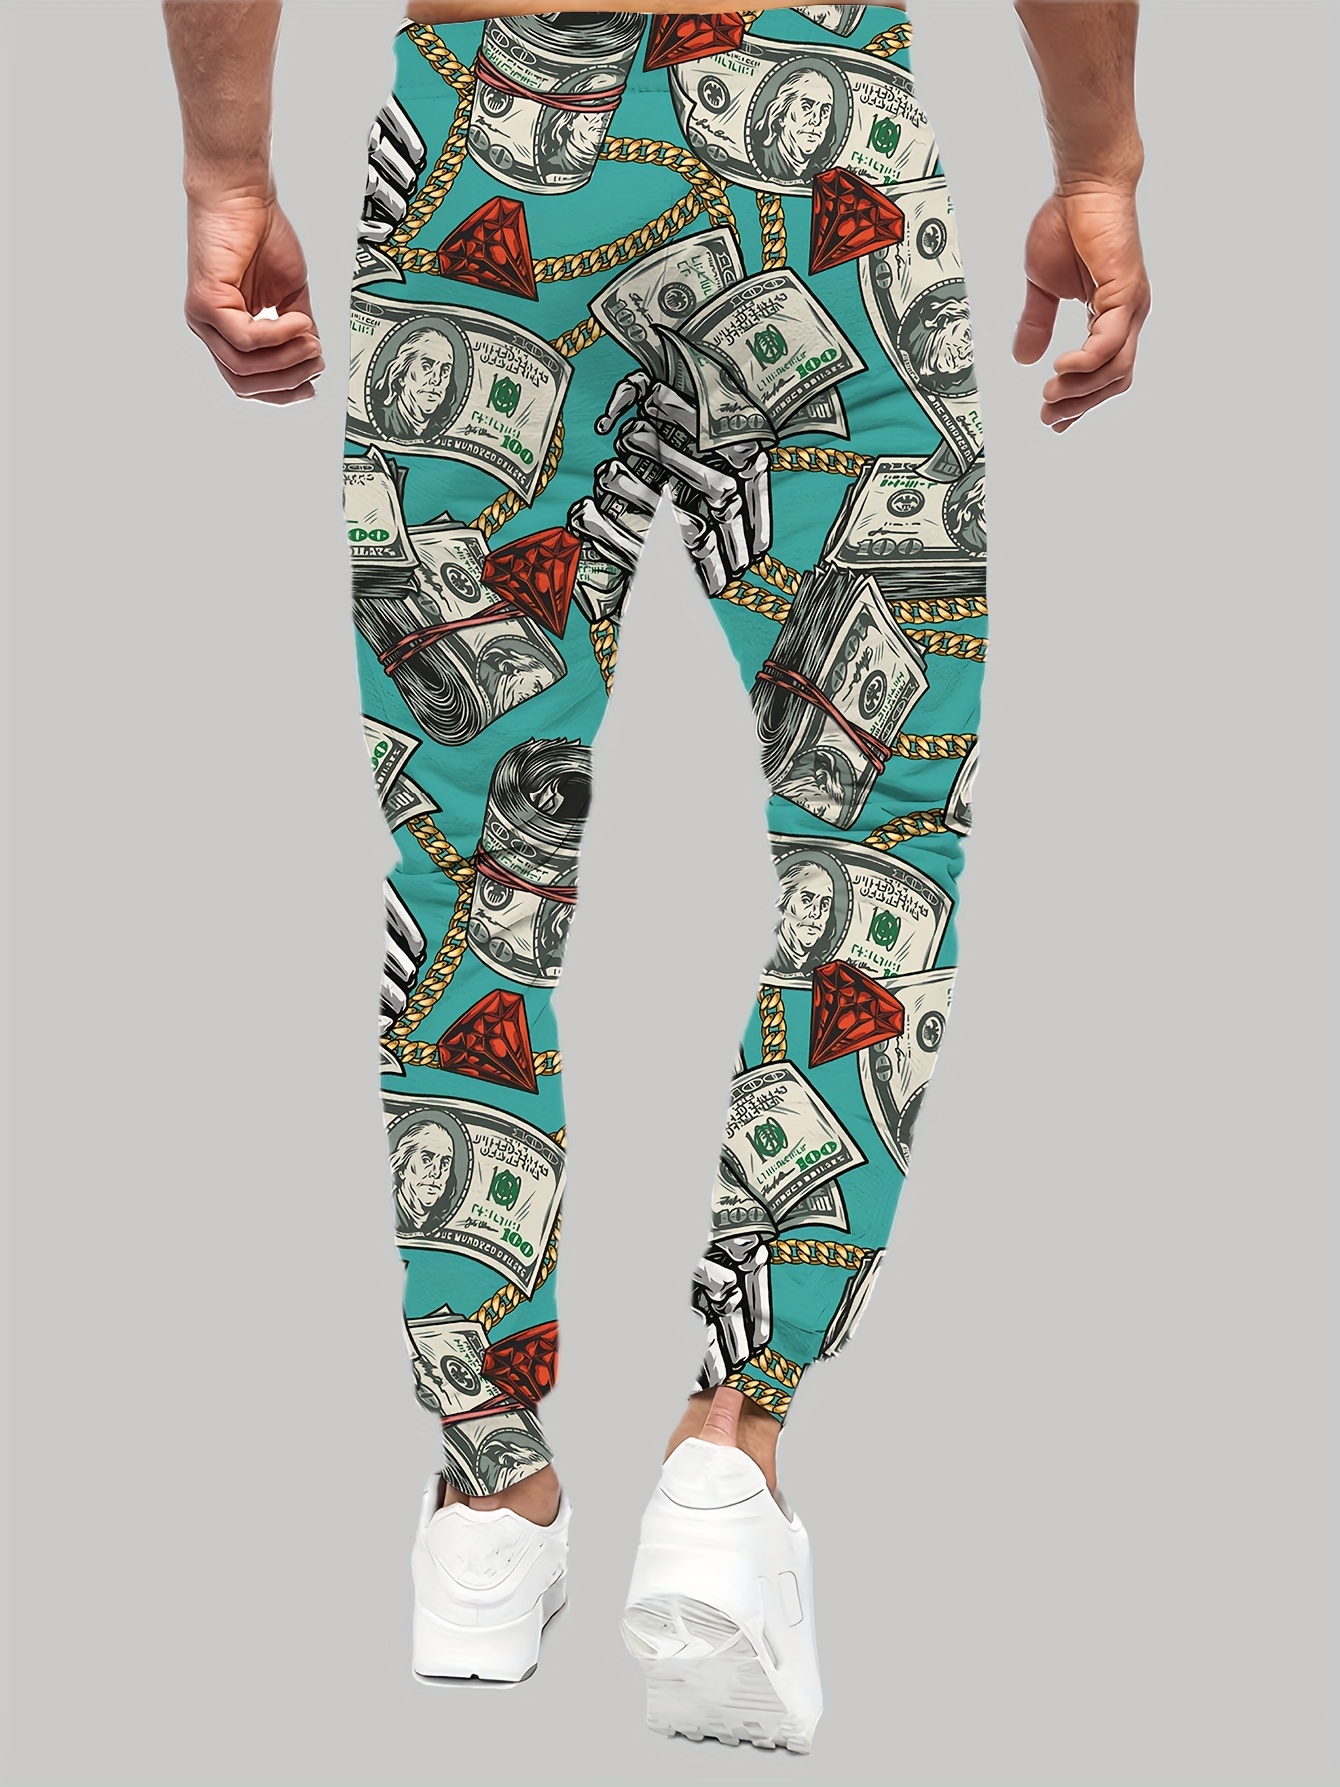 Pantalones jogger casuales para hombre, con cordón con bloques de colores y  bolsillos